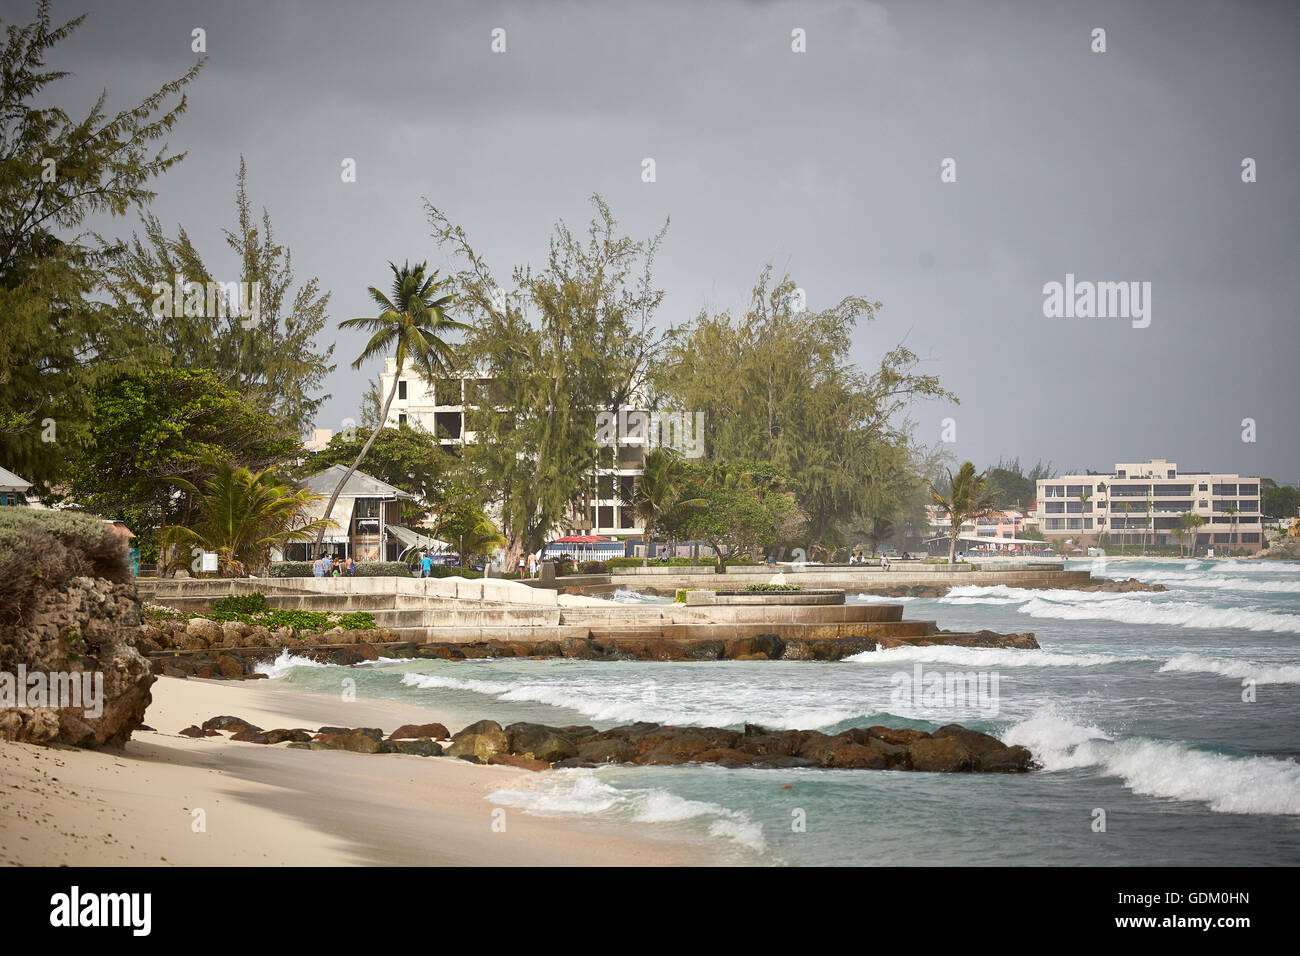 Die kleinen Antillen Barbados Pfarrkirche Sankt Michael Westindien Hauptstadt Bridgetown Rockley Worthing Bereich Strandhotel auf Strand coa Stockfoto